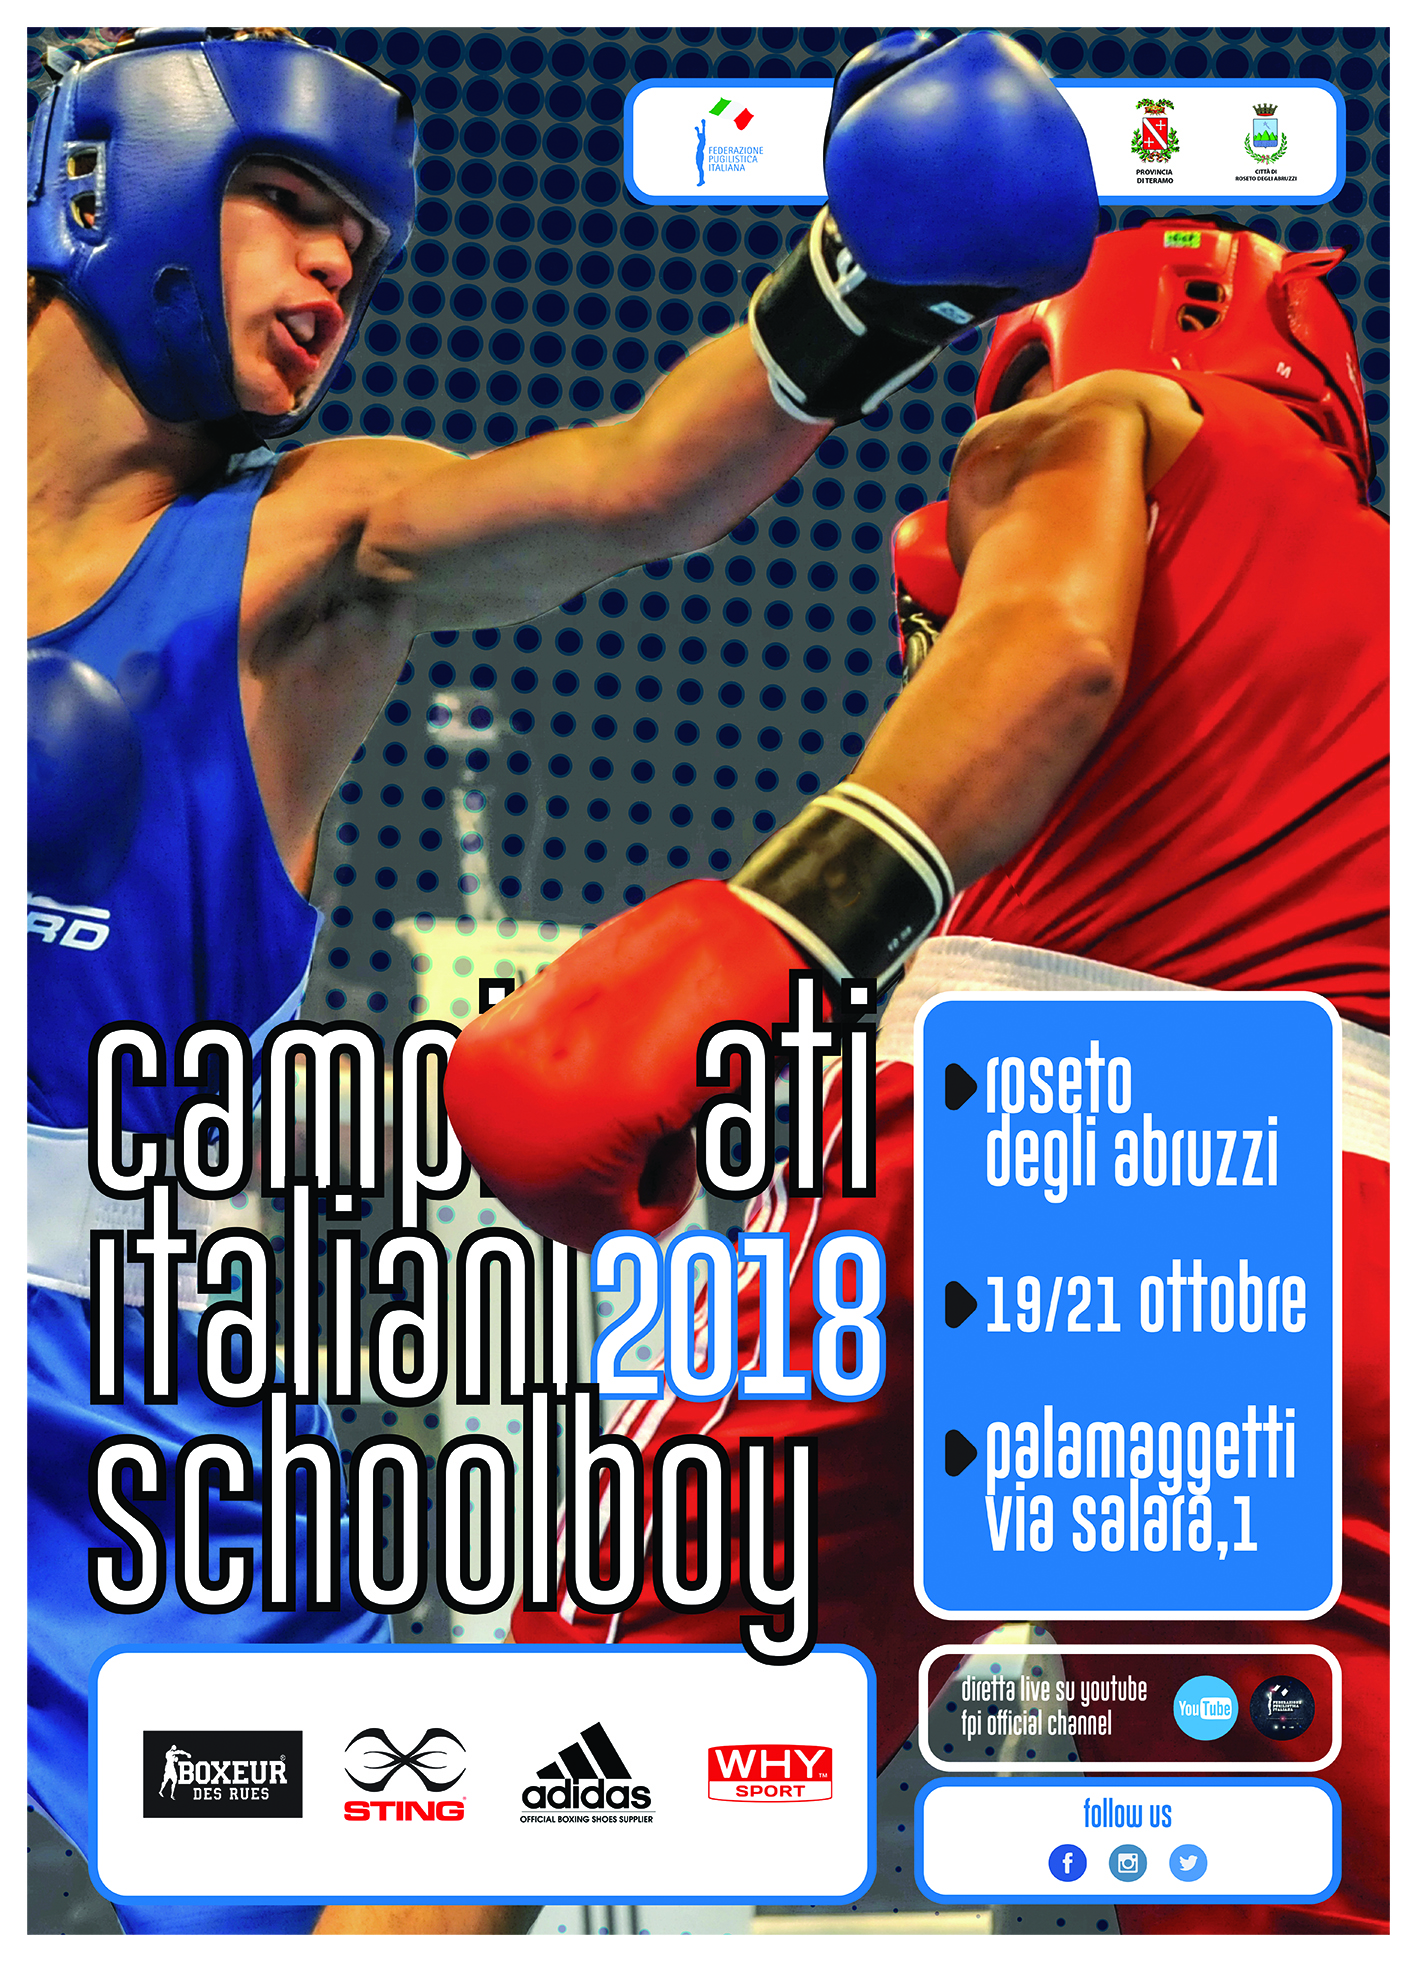 Domani a Roseto degli Abruzzi il via alle Finali dei Campionati Italiani Schoolboy 2018: Preview con Covengno sul Bullismo - INFOLIVESTREAMING 